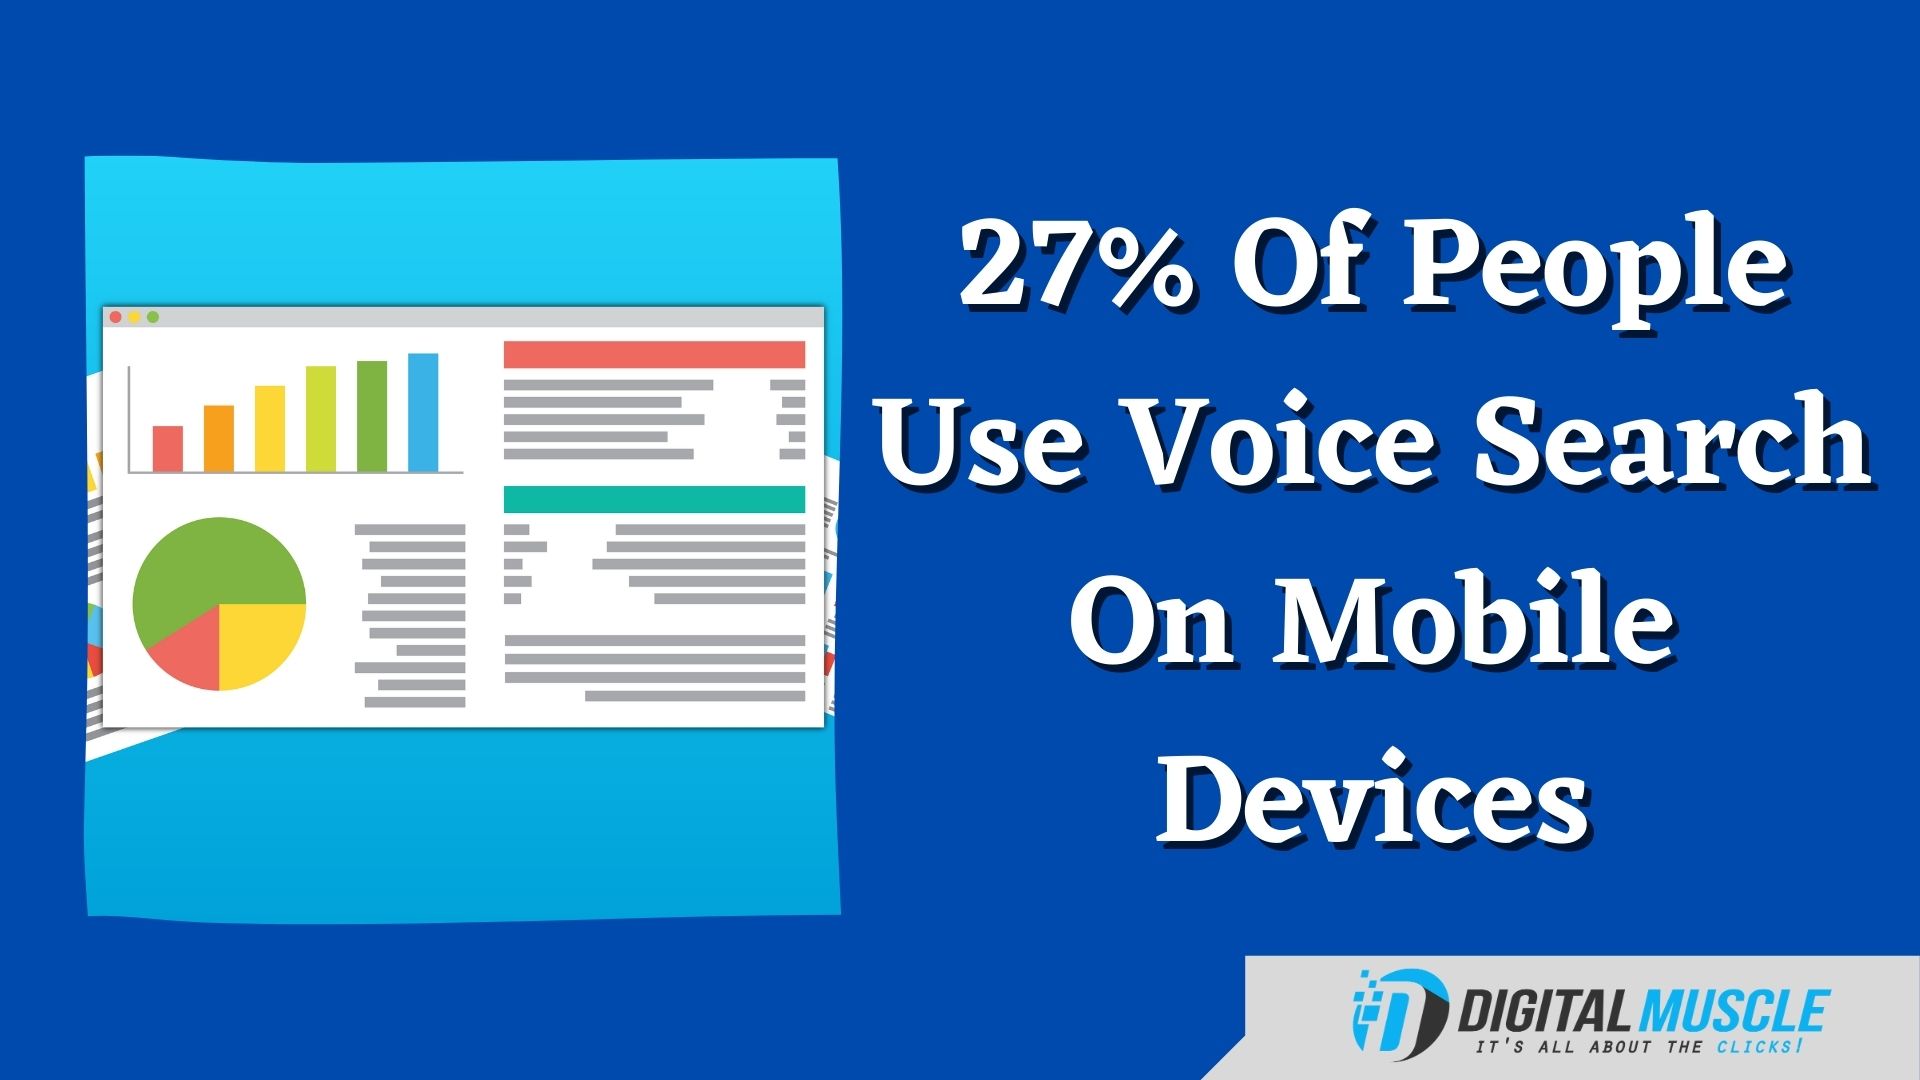 Mobile voice search statistics